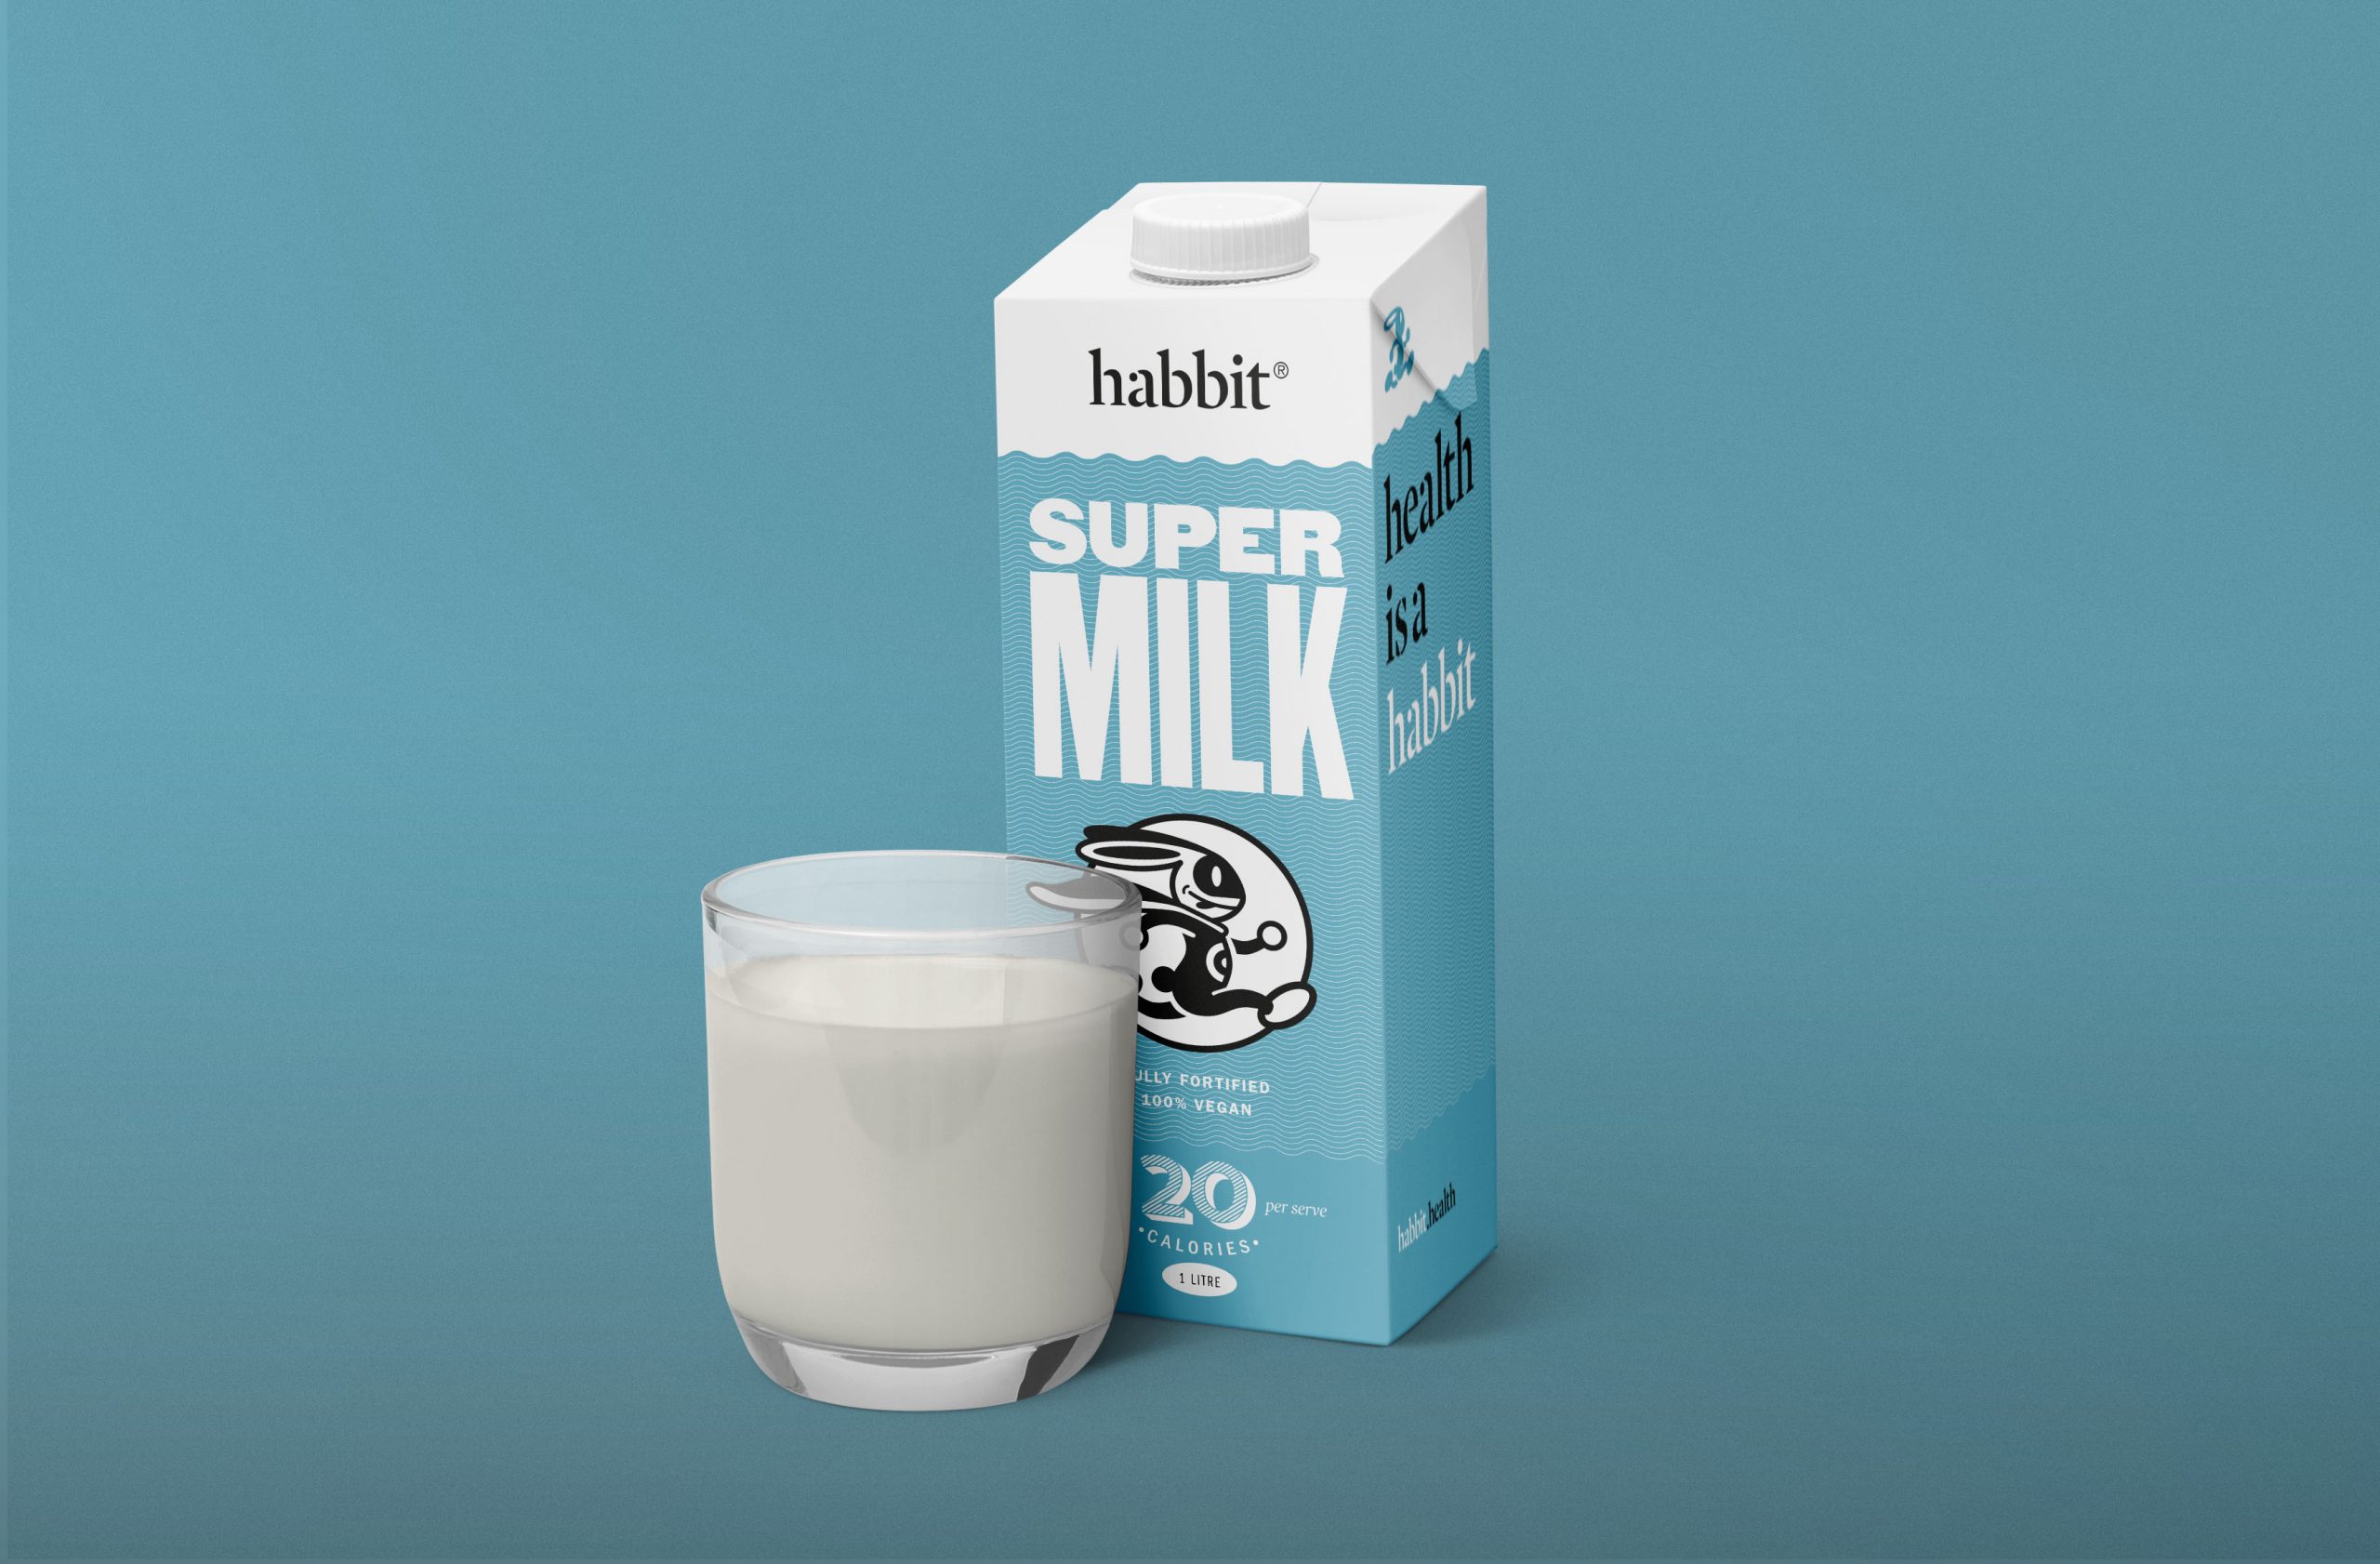 Habbit Super Milk